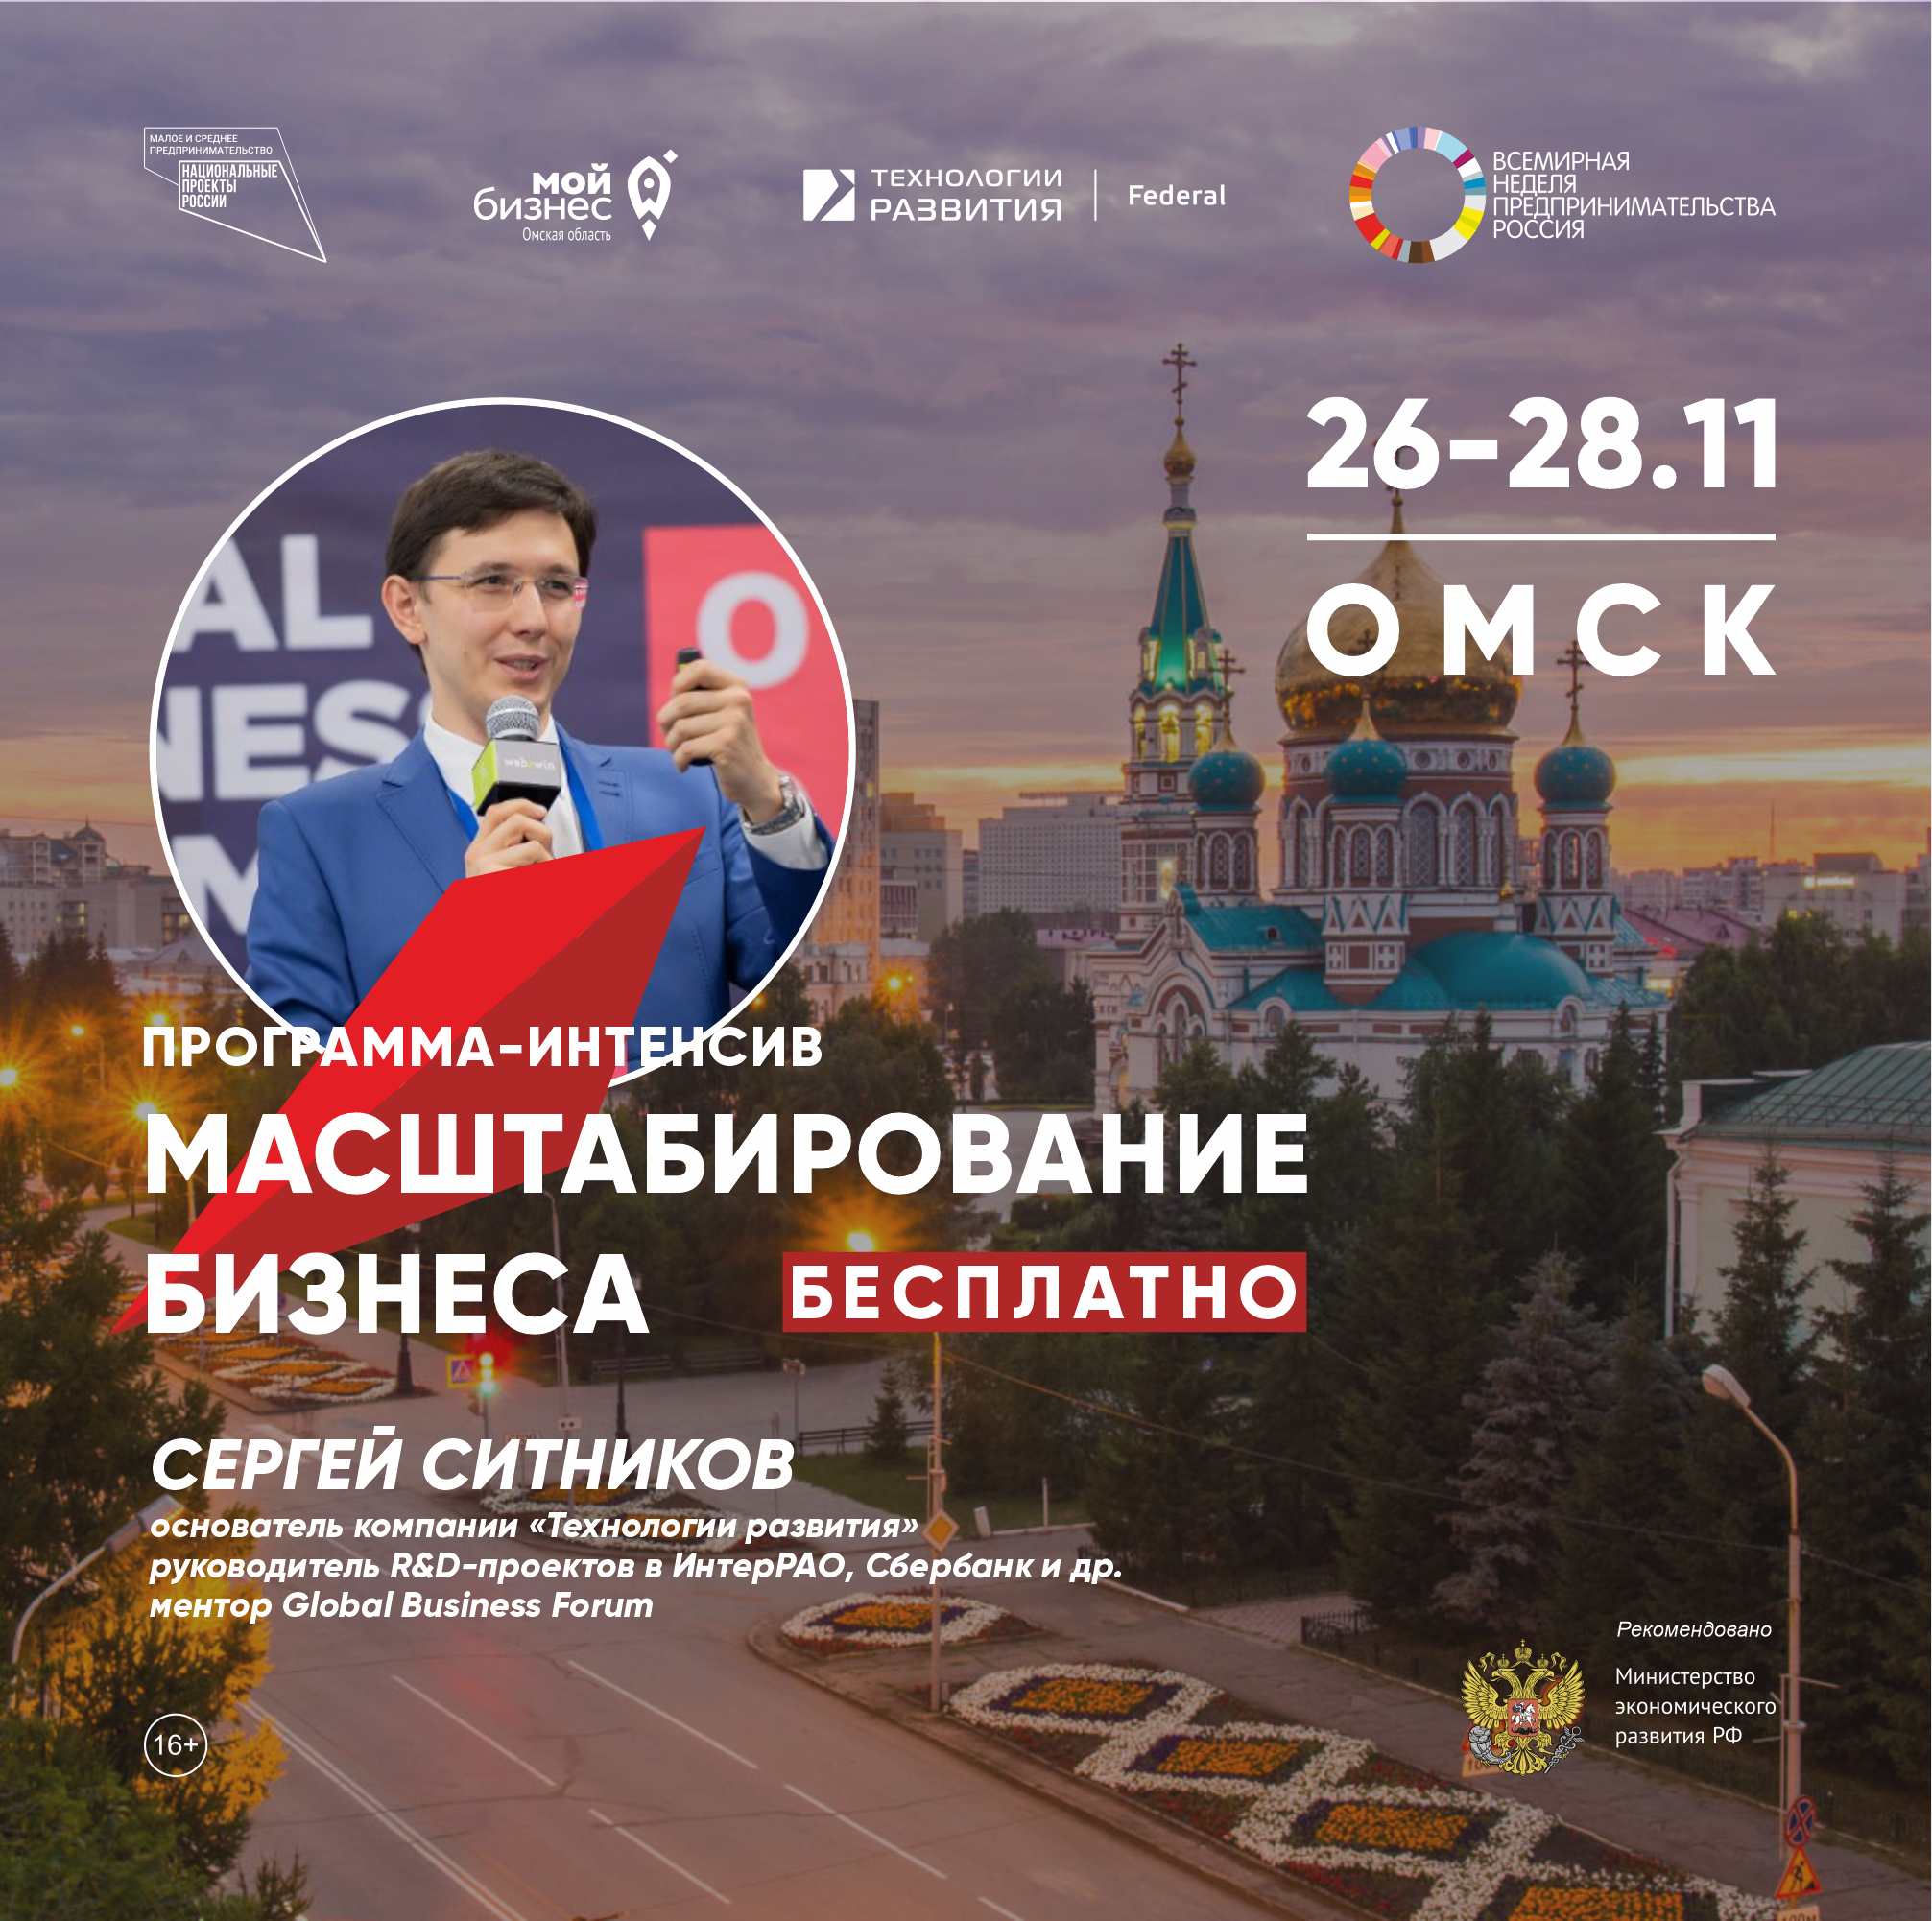 Омских предпринимателей приглашают узнать все о масштабировании бизнеса за 3 дня